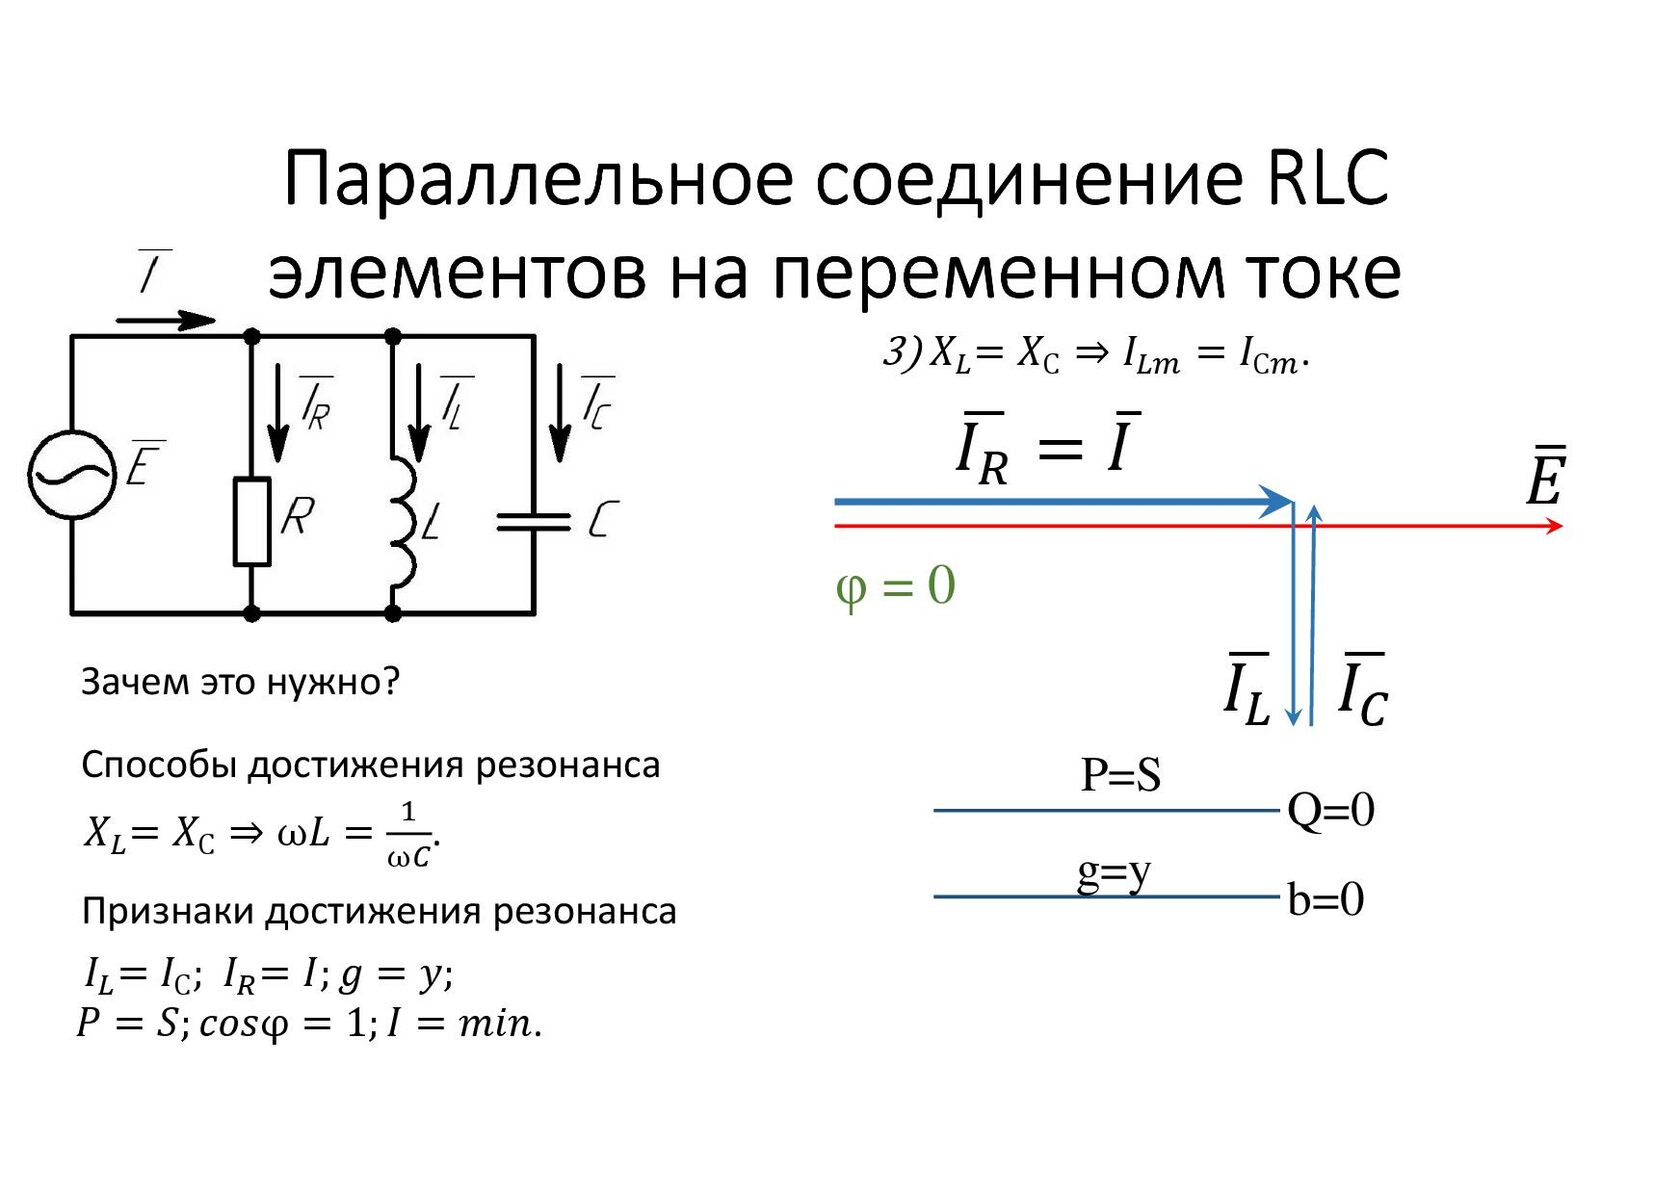 Электрические цепи с параллельным соединением RLC